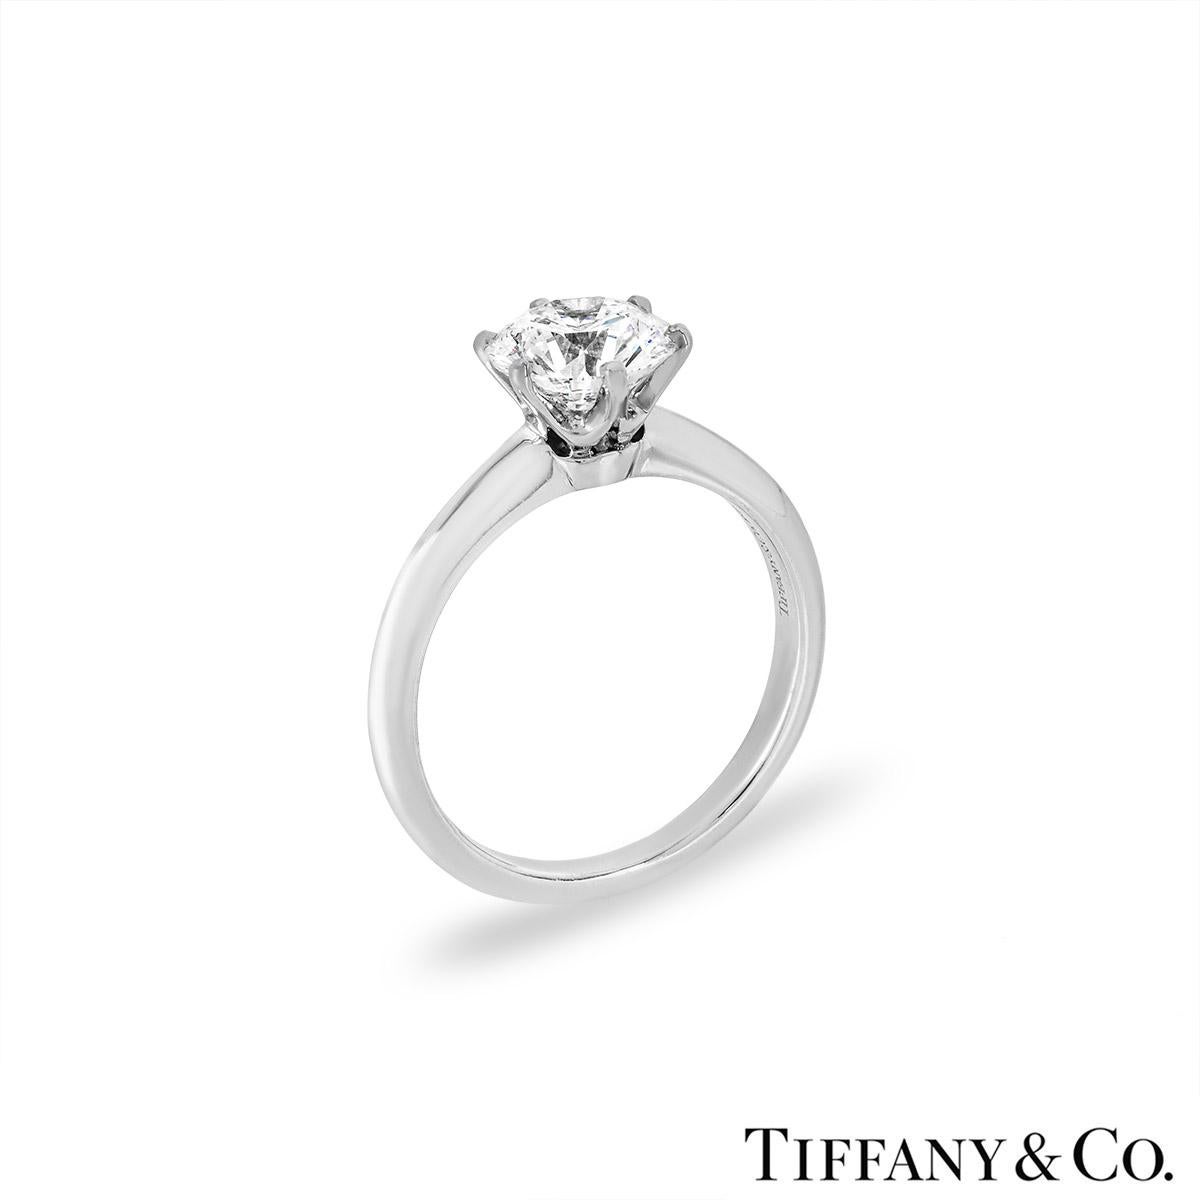 Ein wunderschöner Diamant-Verlobungsring von Tiffany & Co. aus der Tiffany Setting Band Kollektion. Der Ring besteht aus einem runden Diamanten im Brillantschliff in einer Zackenfassung mit einem Gewicht von 1,53 ct, Farbe E und Reinheit VVS2. Der